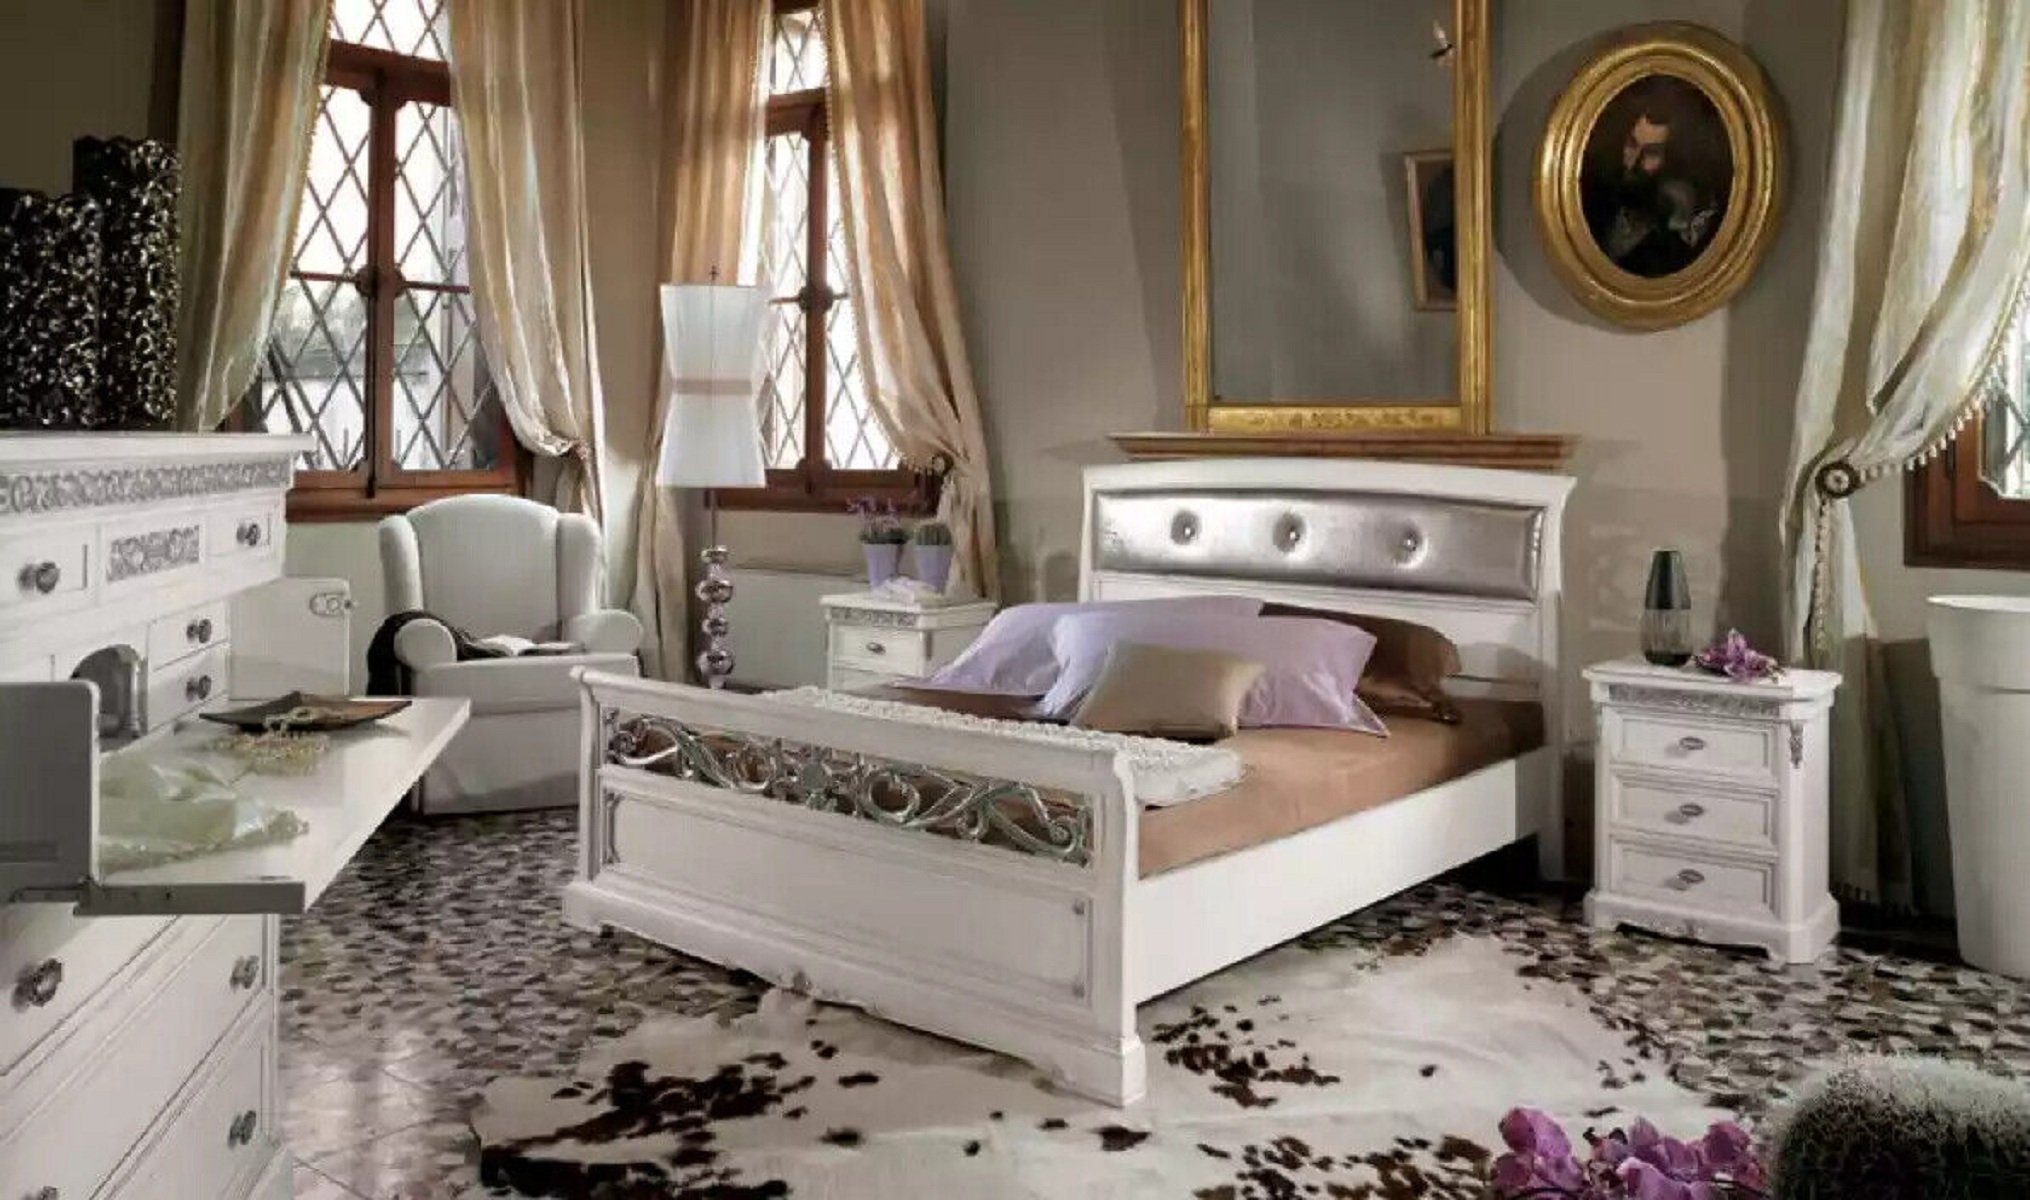 3 Schlafzimmer-Set Luxus Nachttische) JVmoebel Designer + Betten, (3-St., Set Schlafzimmer 2x tlg. Bett 2x Nachttische Bett